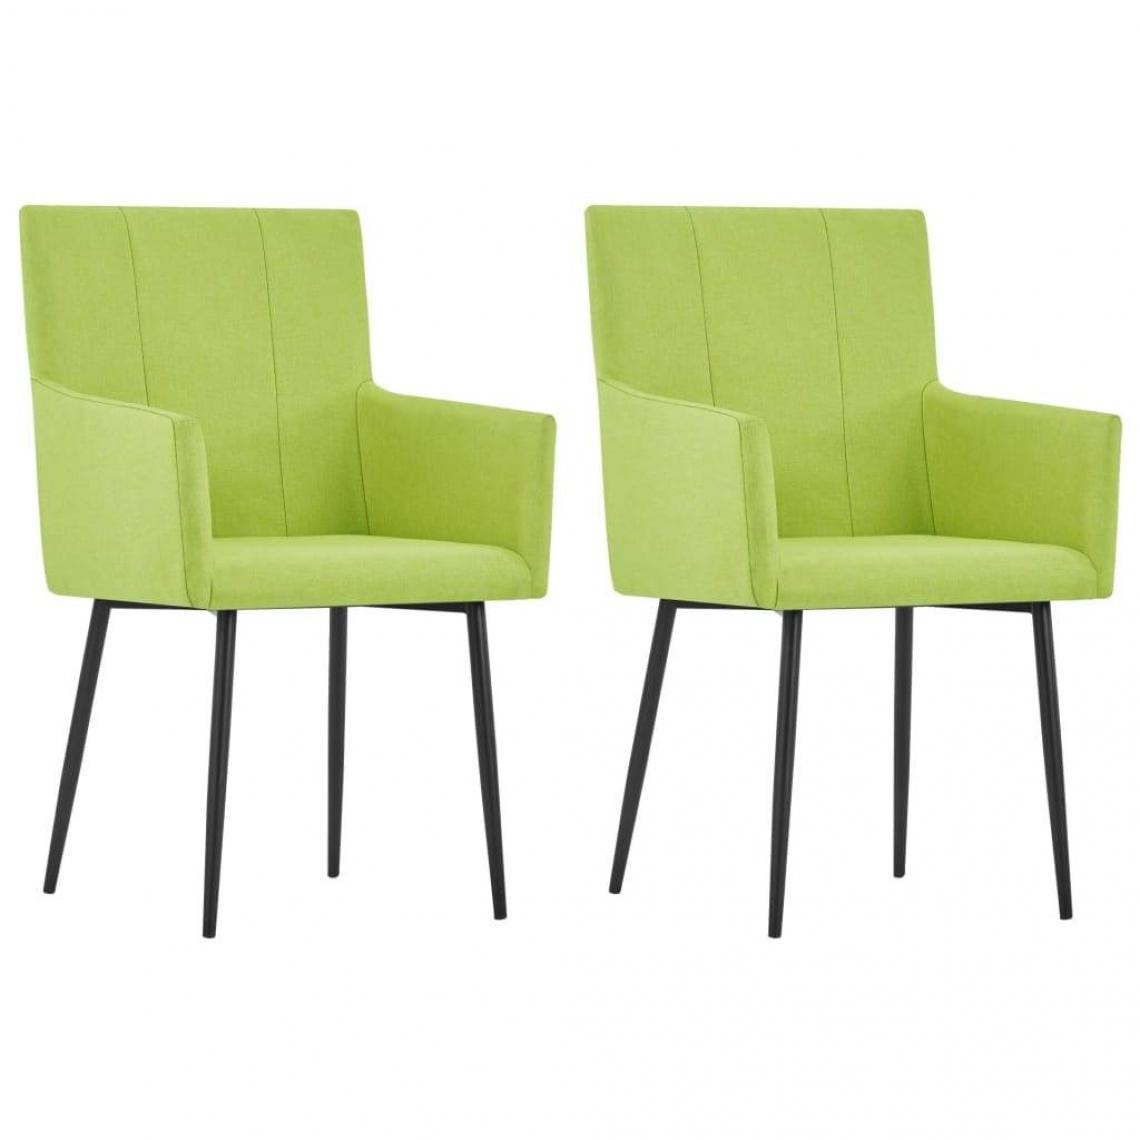 Decoshop26 - Lot de 2 chaises de salle à manger cuisine avec accoudoirs design moderne tissu vert CDS020151 - Chaises